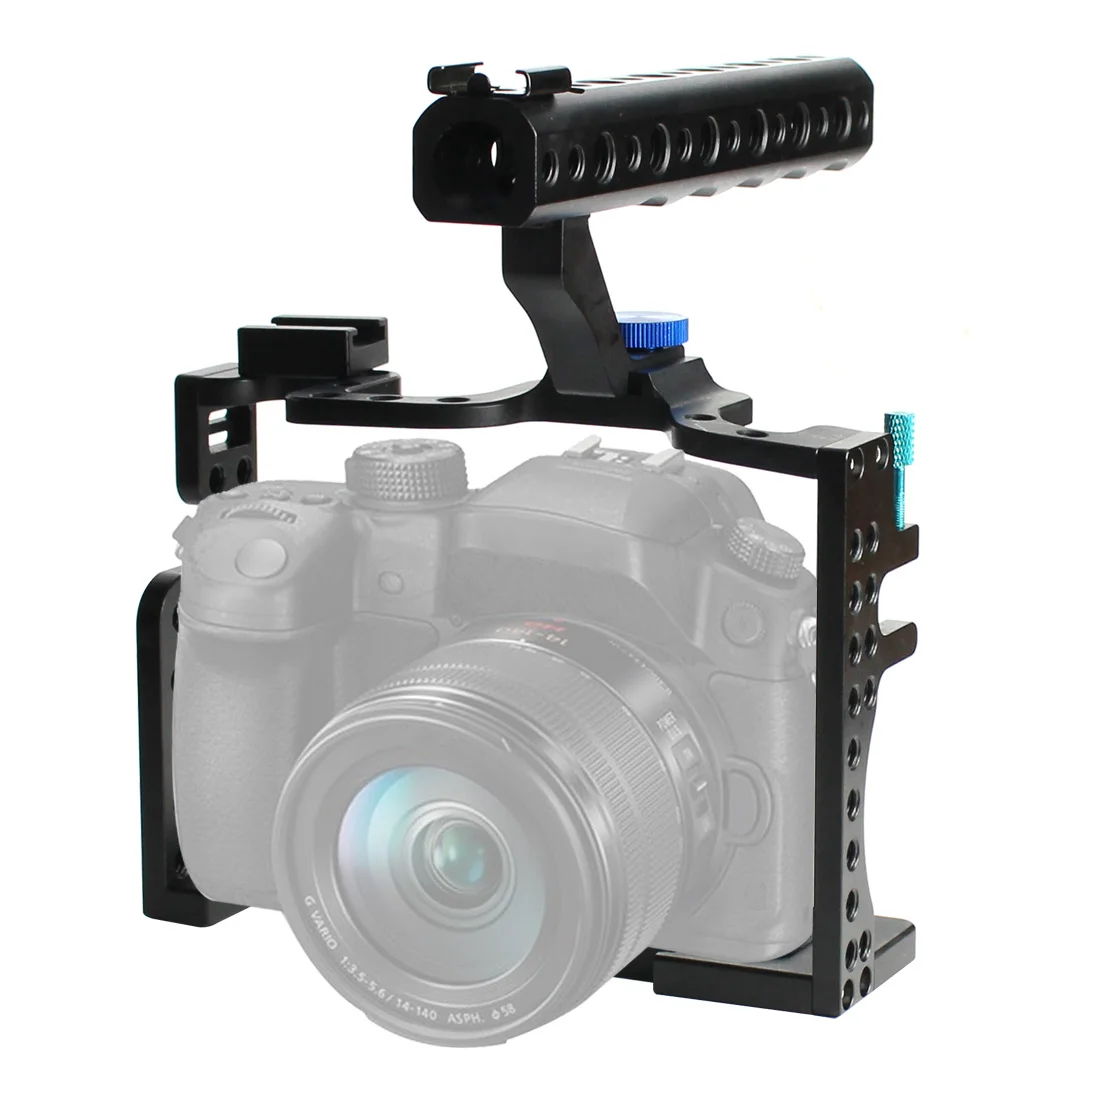 Клетка для камеры с верхней ручкой винты защитный чехол держатель для Panasonic GH3/GH4 камера фото студия фотографии комплект